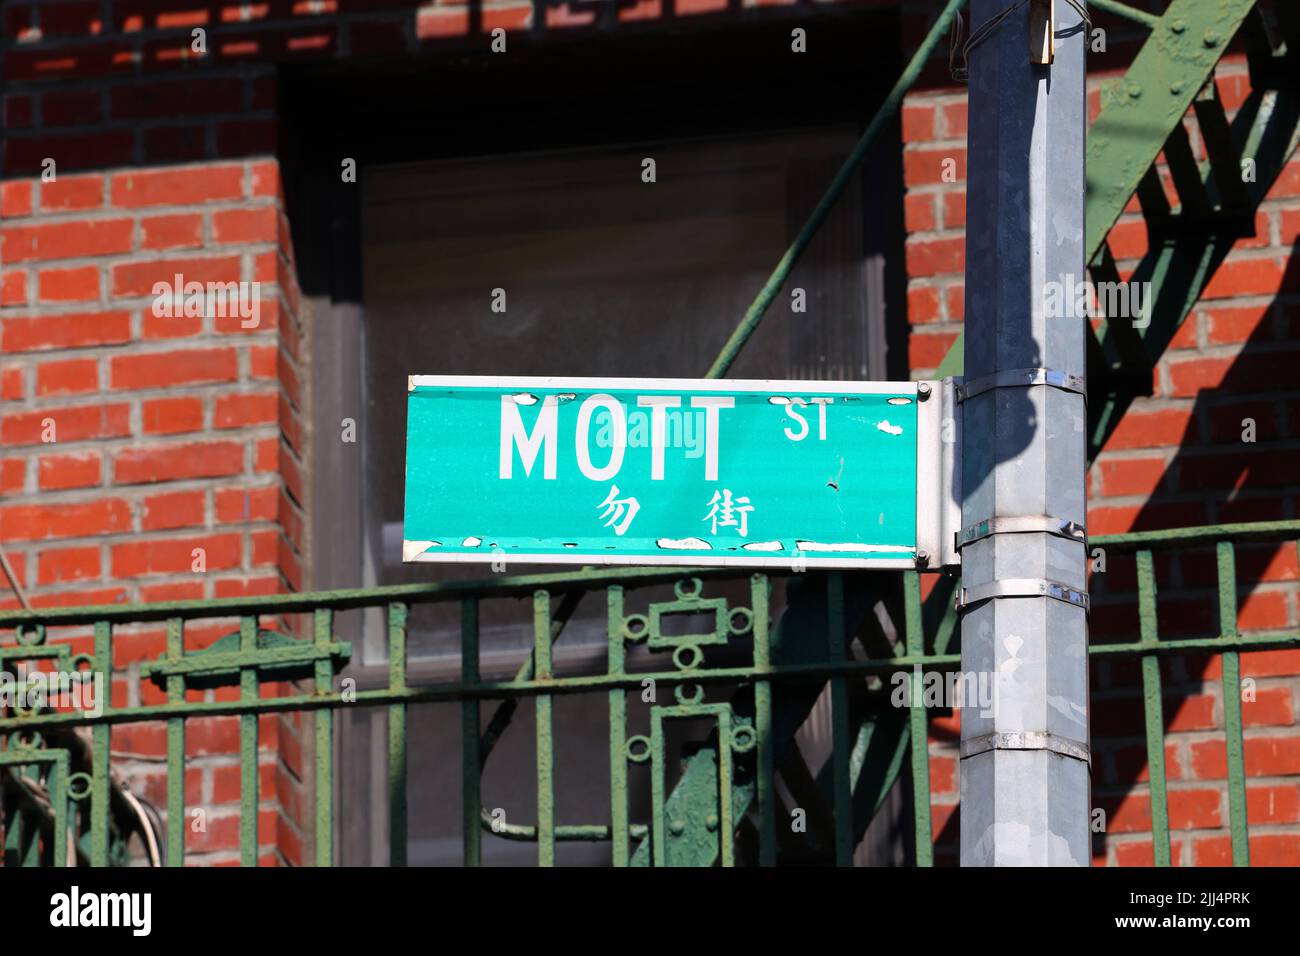 Panneau de la rue Mott St 勿街 dans le quartier chinois de Manhattan, New York. Panneau Mott Street Banque D'Images